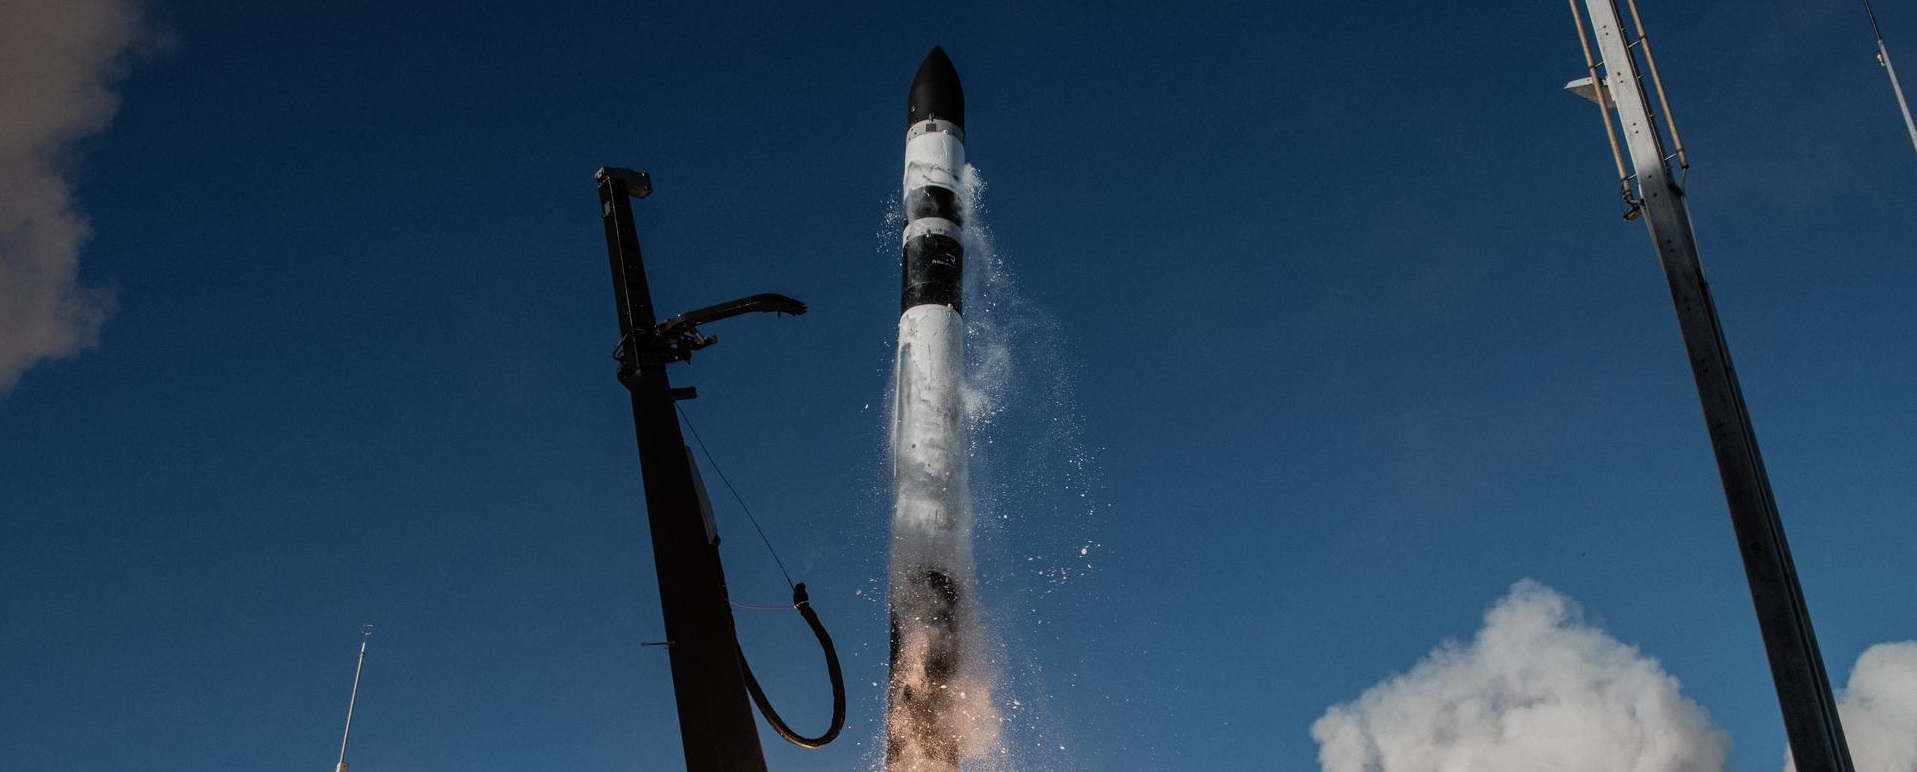 rocket launching